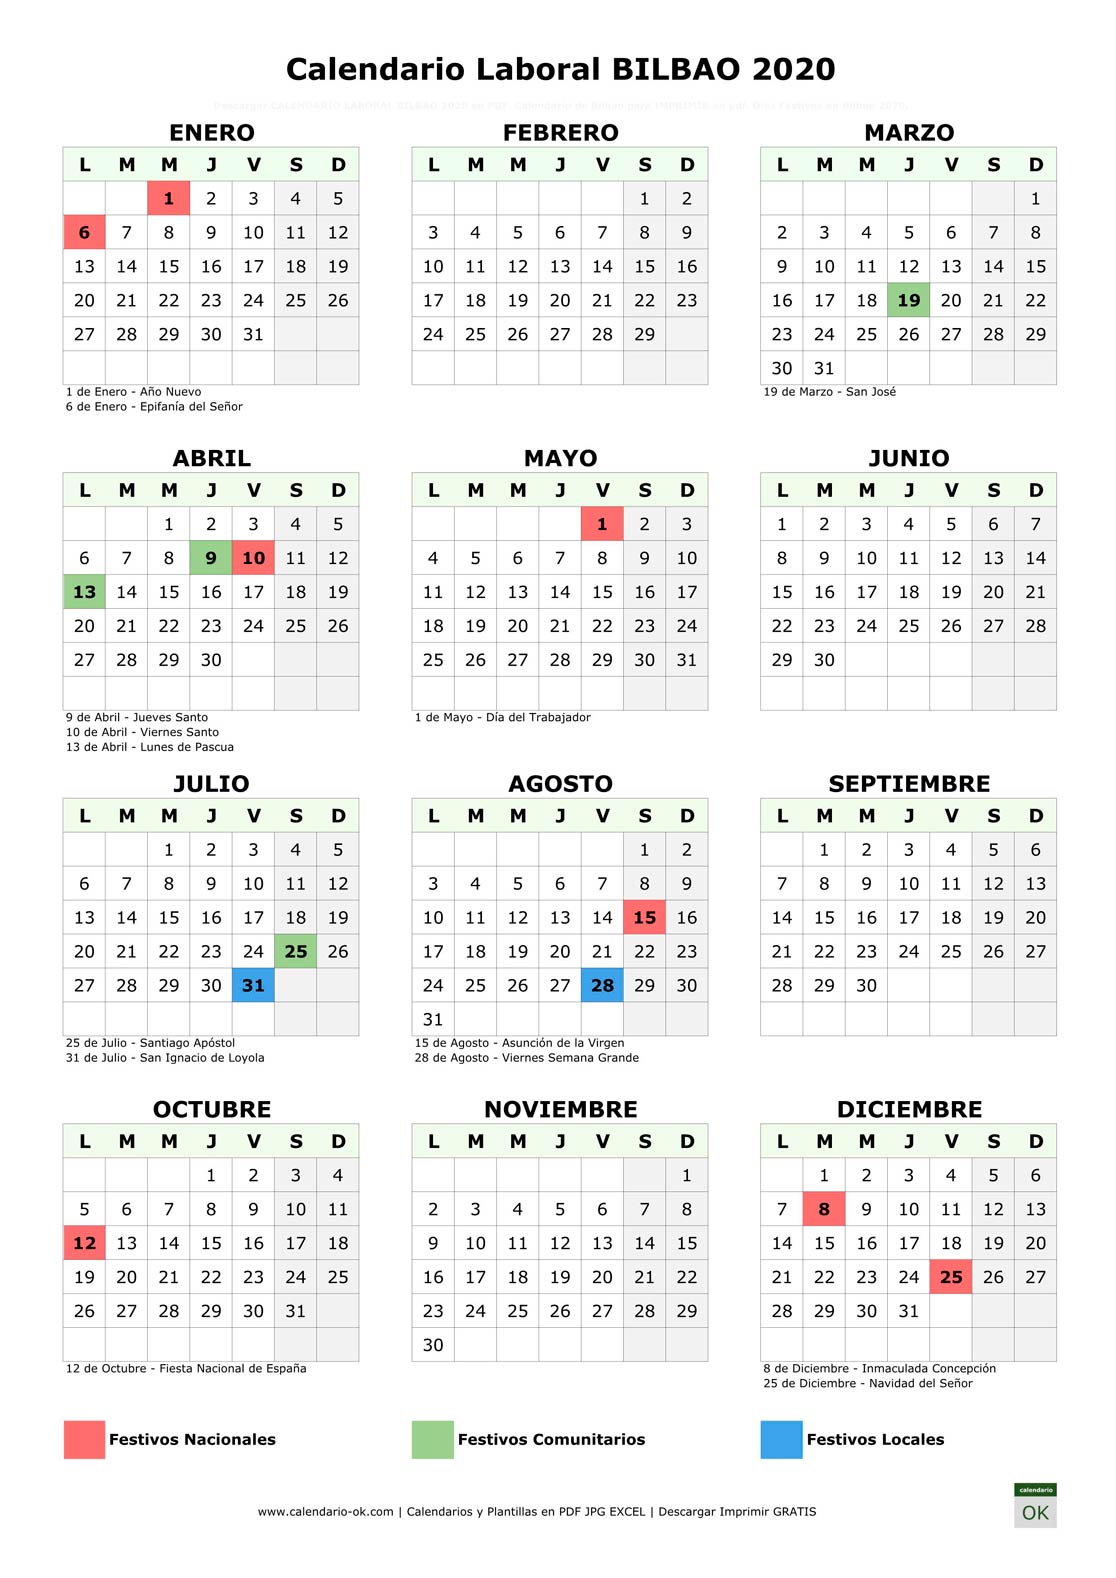 Calendario Laboral BILBAO 2020